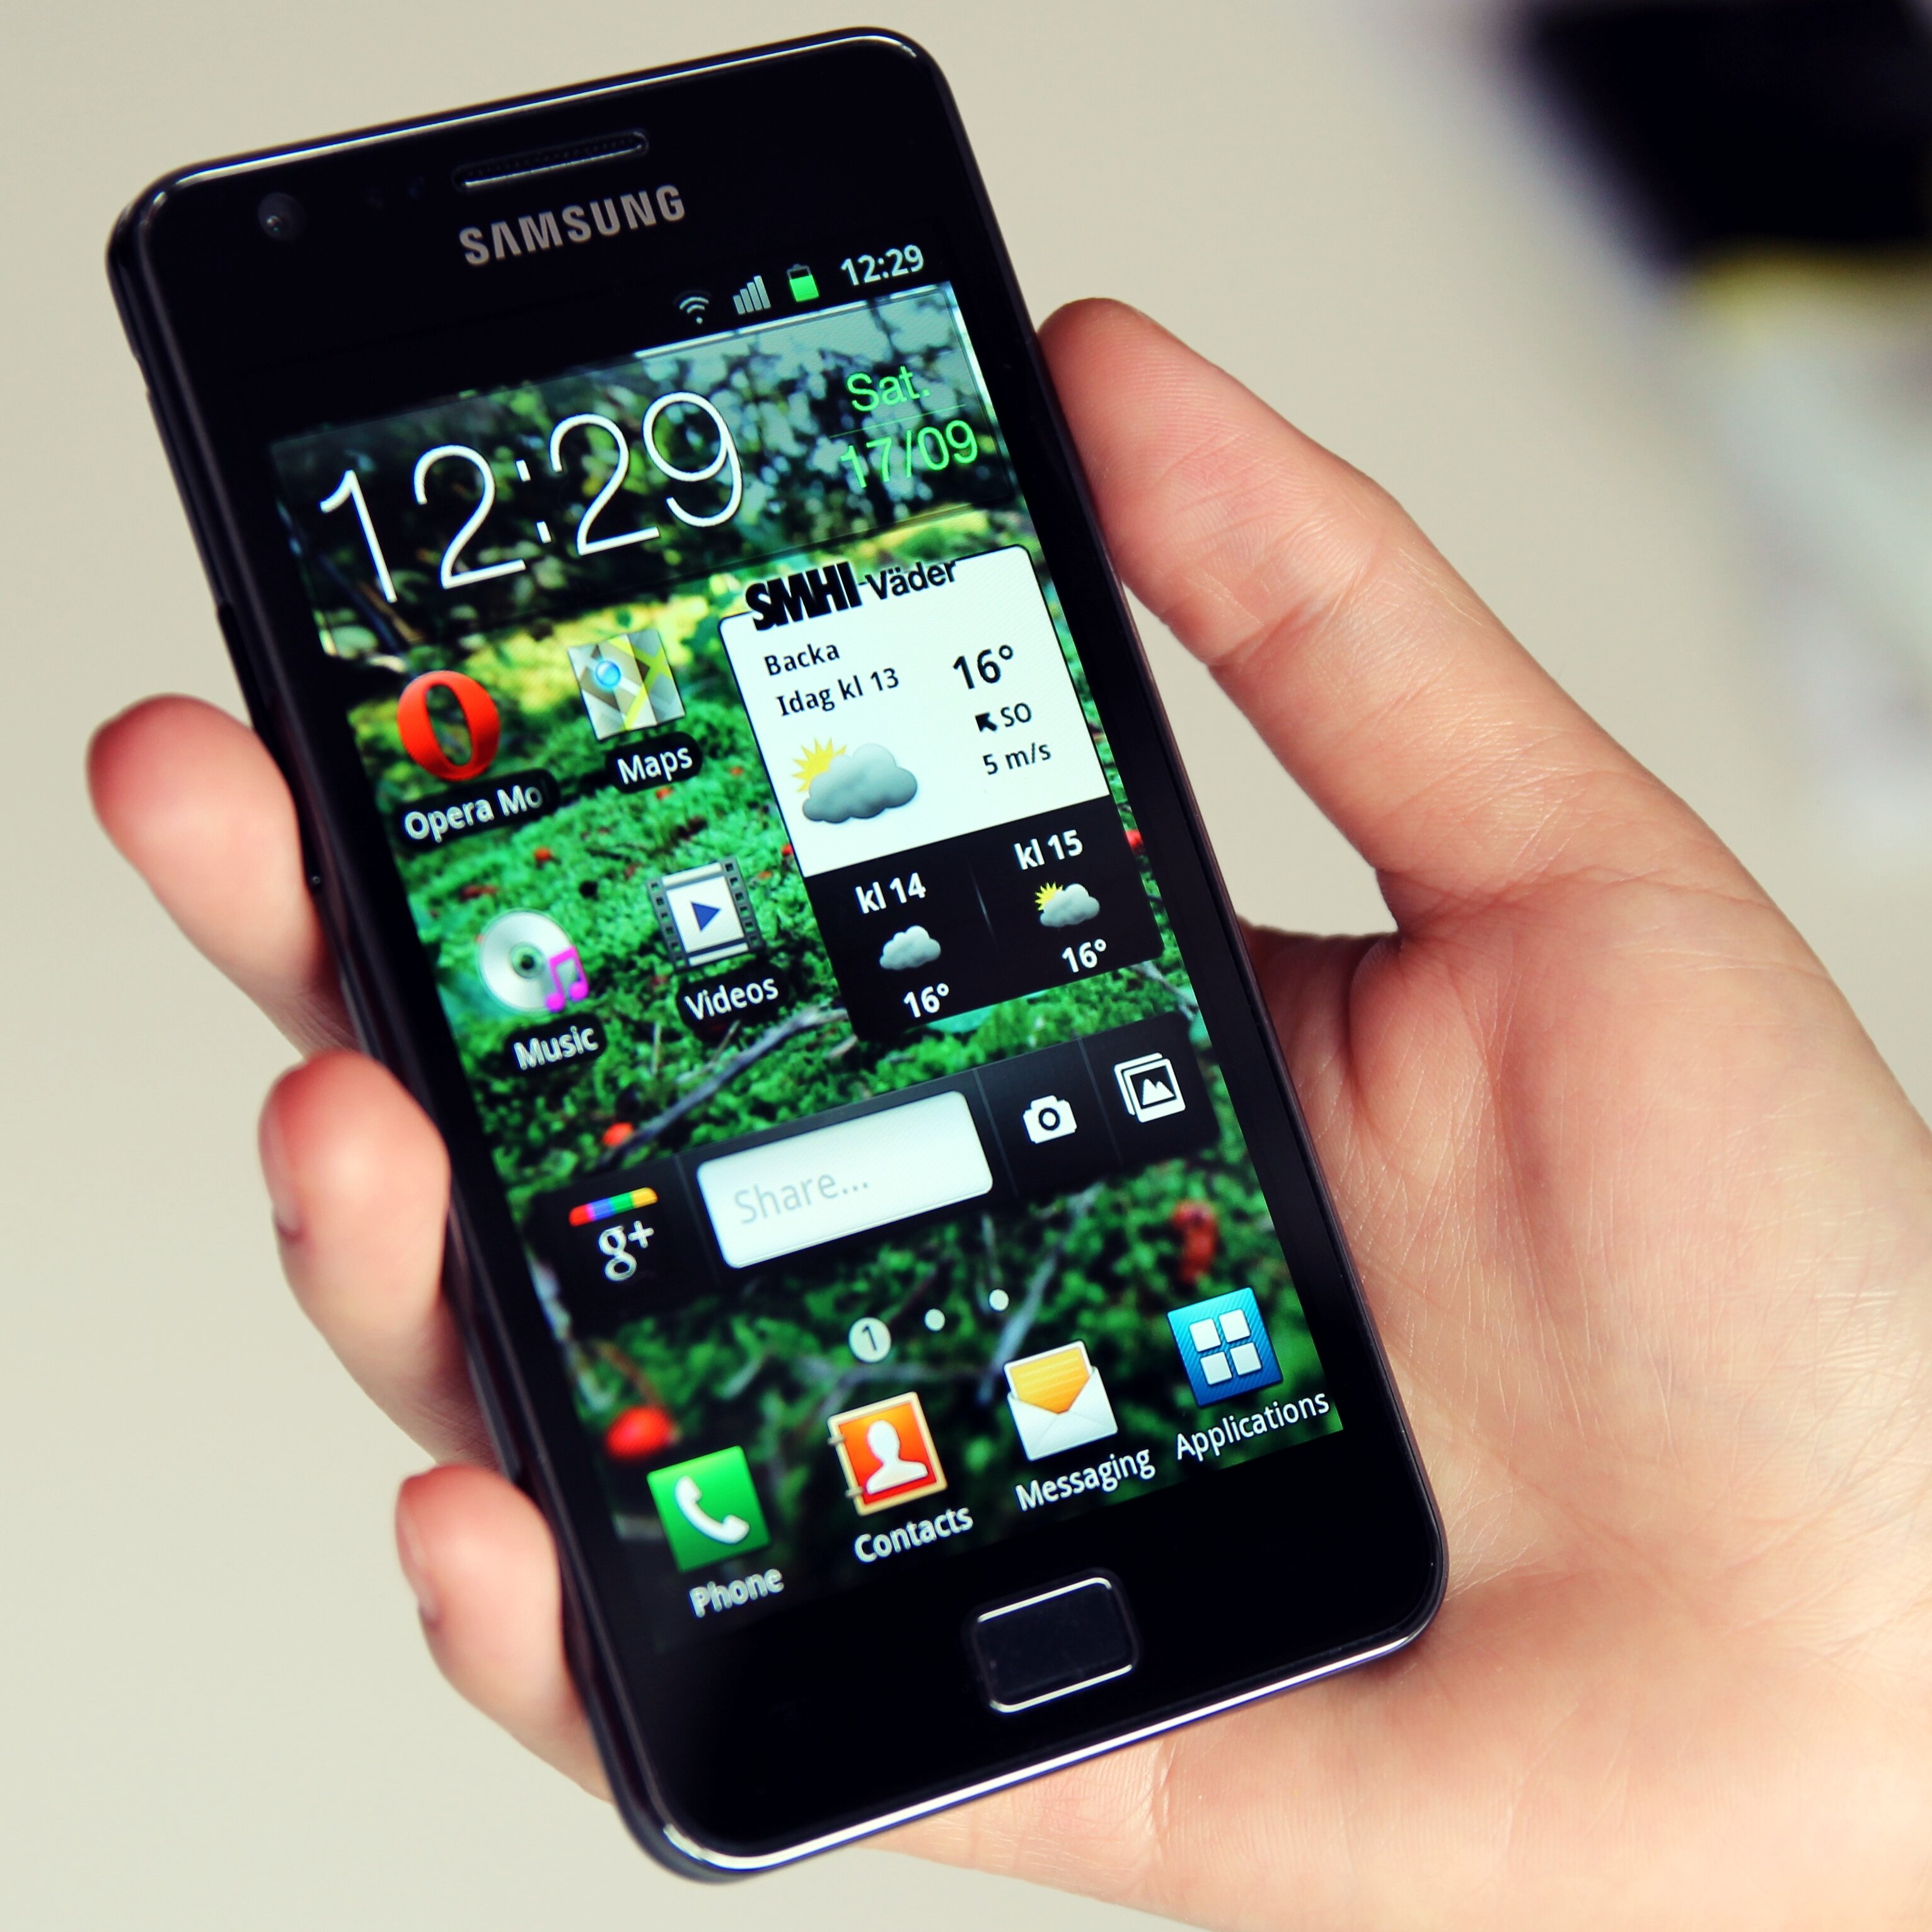 Samsung Galaxy S II: smartphone giá rẻ đáng quan tâm